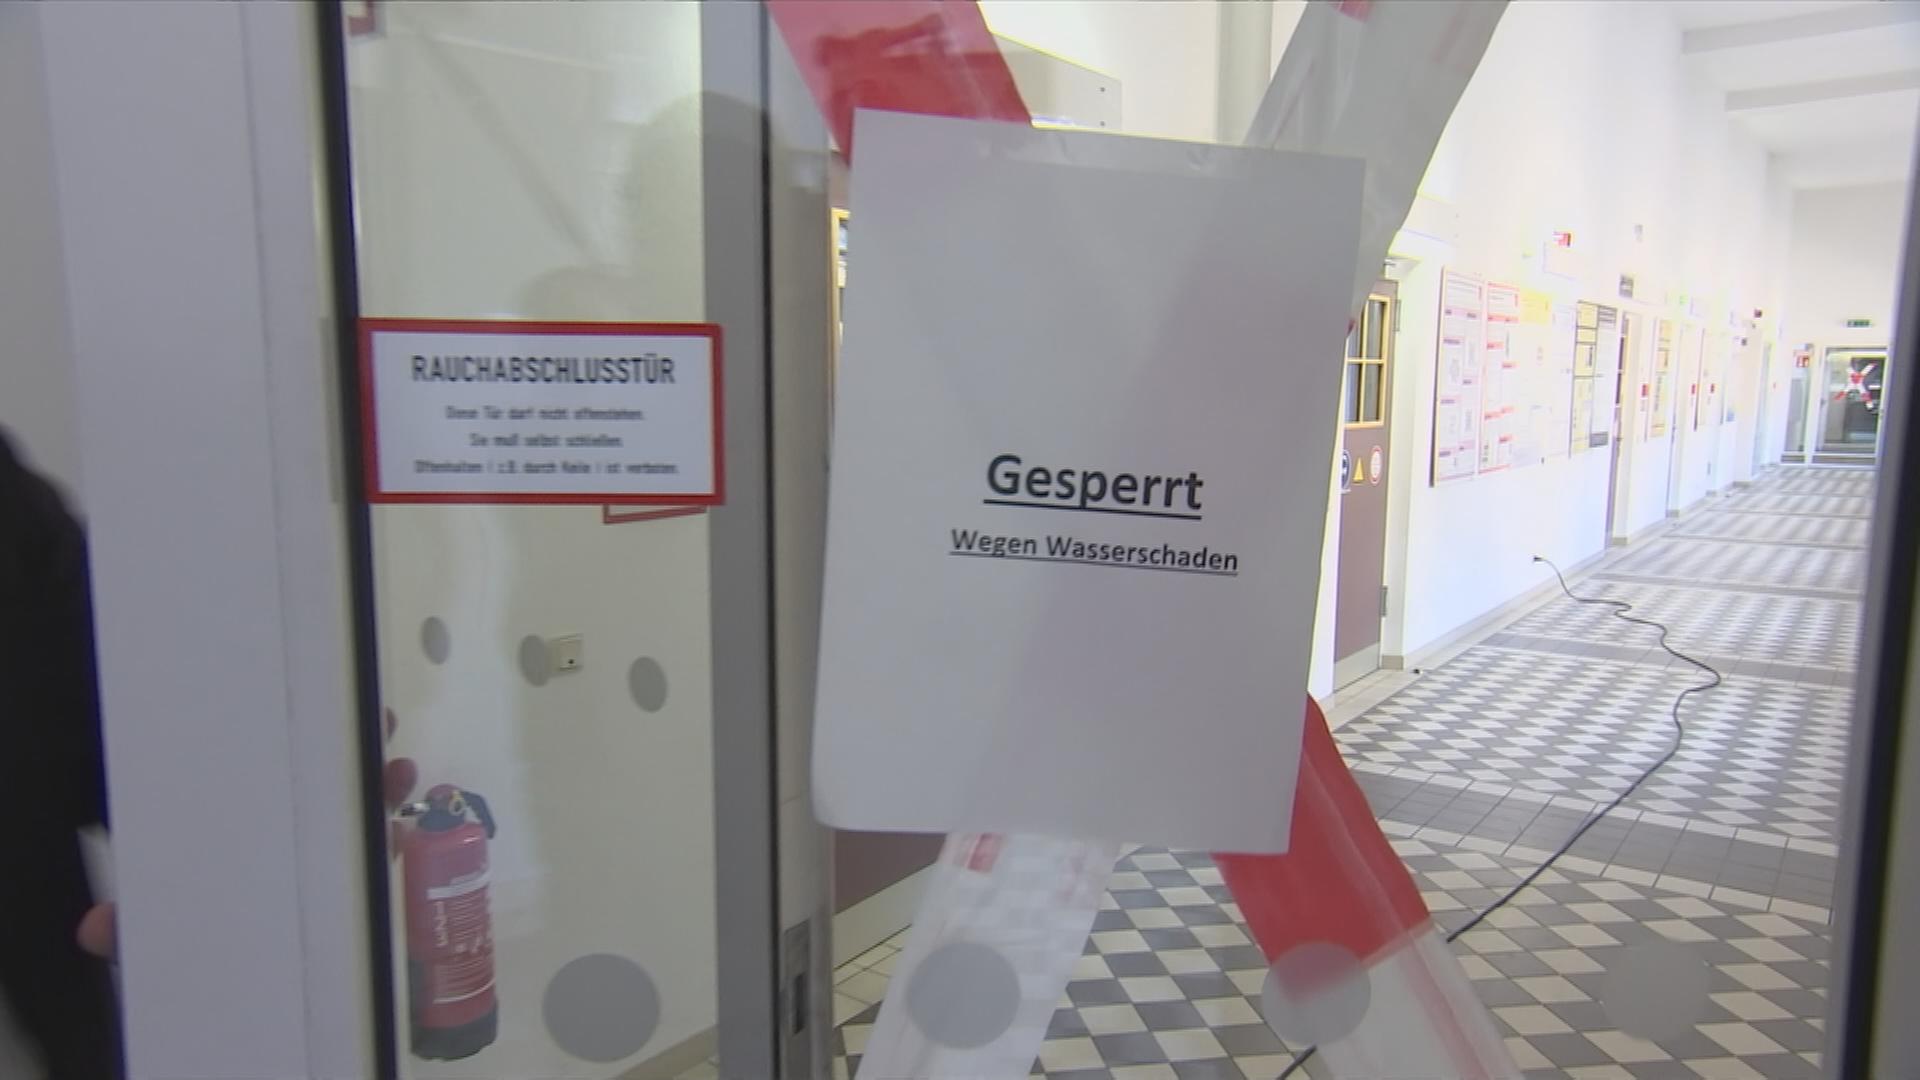 Schild an TU Berlin "Gesperrt wegen Wasserschaden"